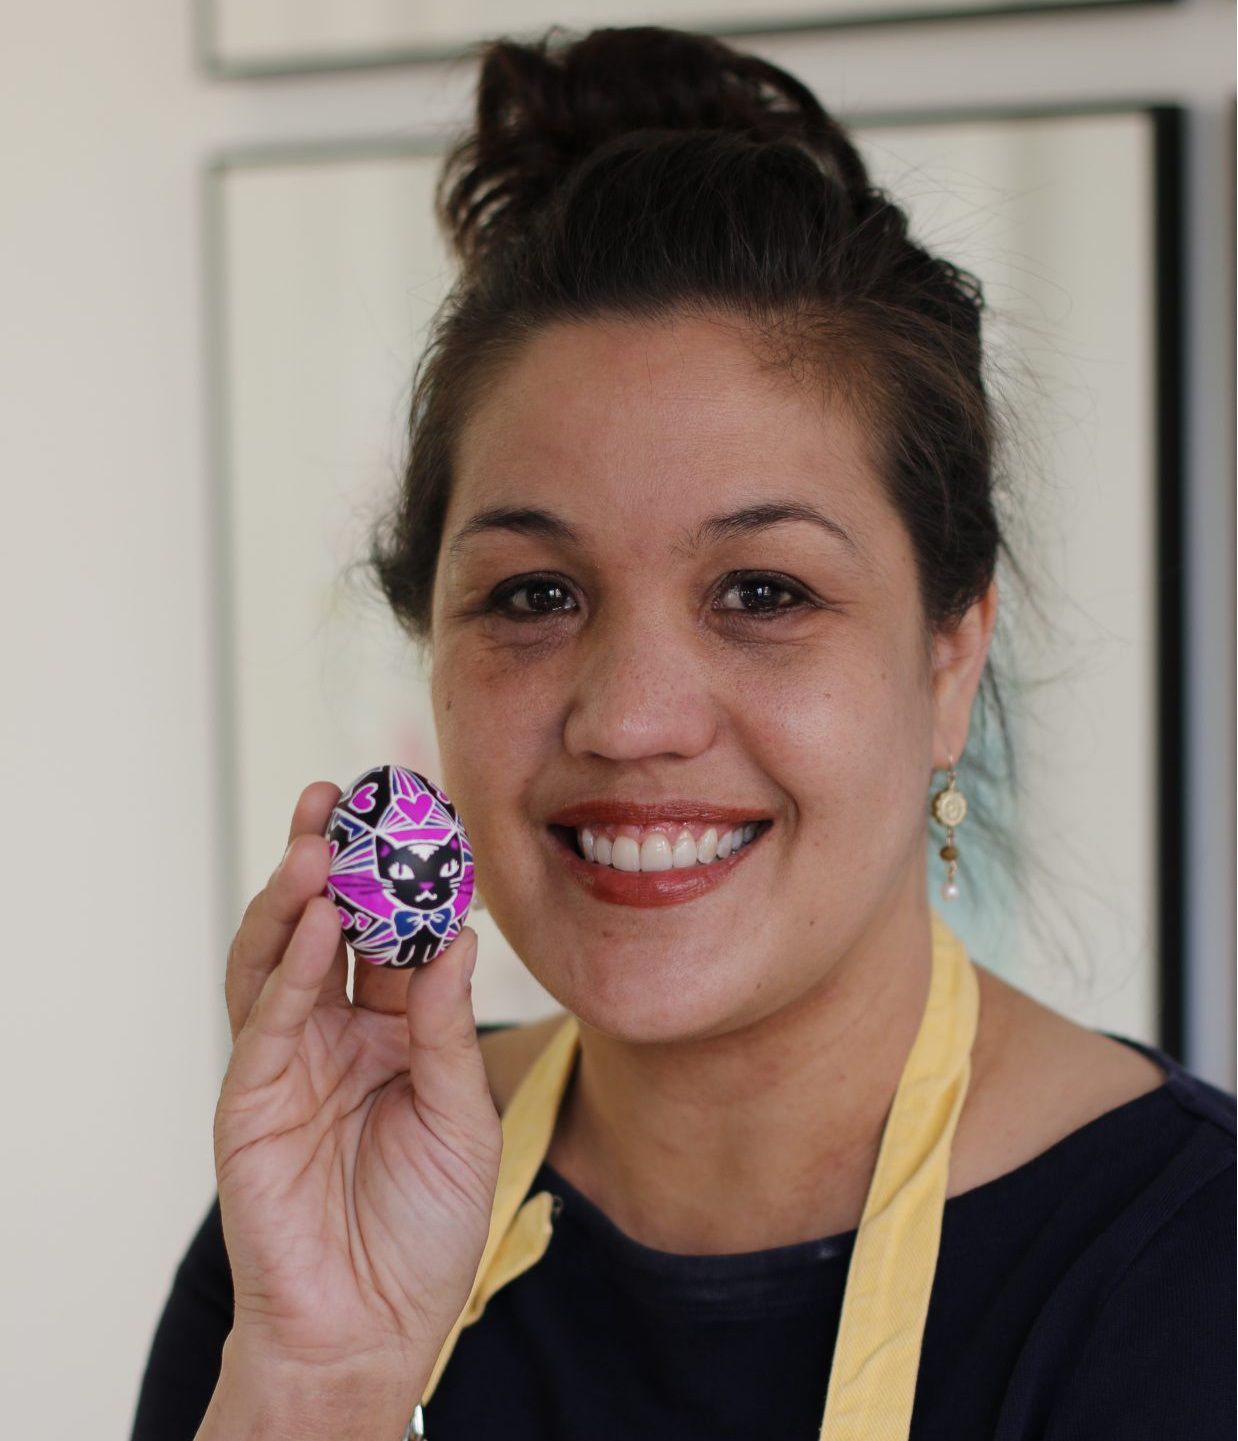 artist holding pysanky egg with kitten design